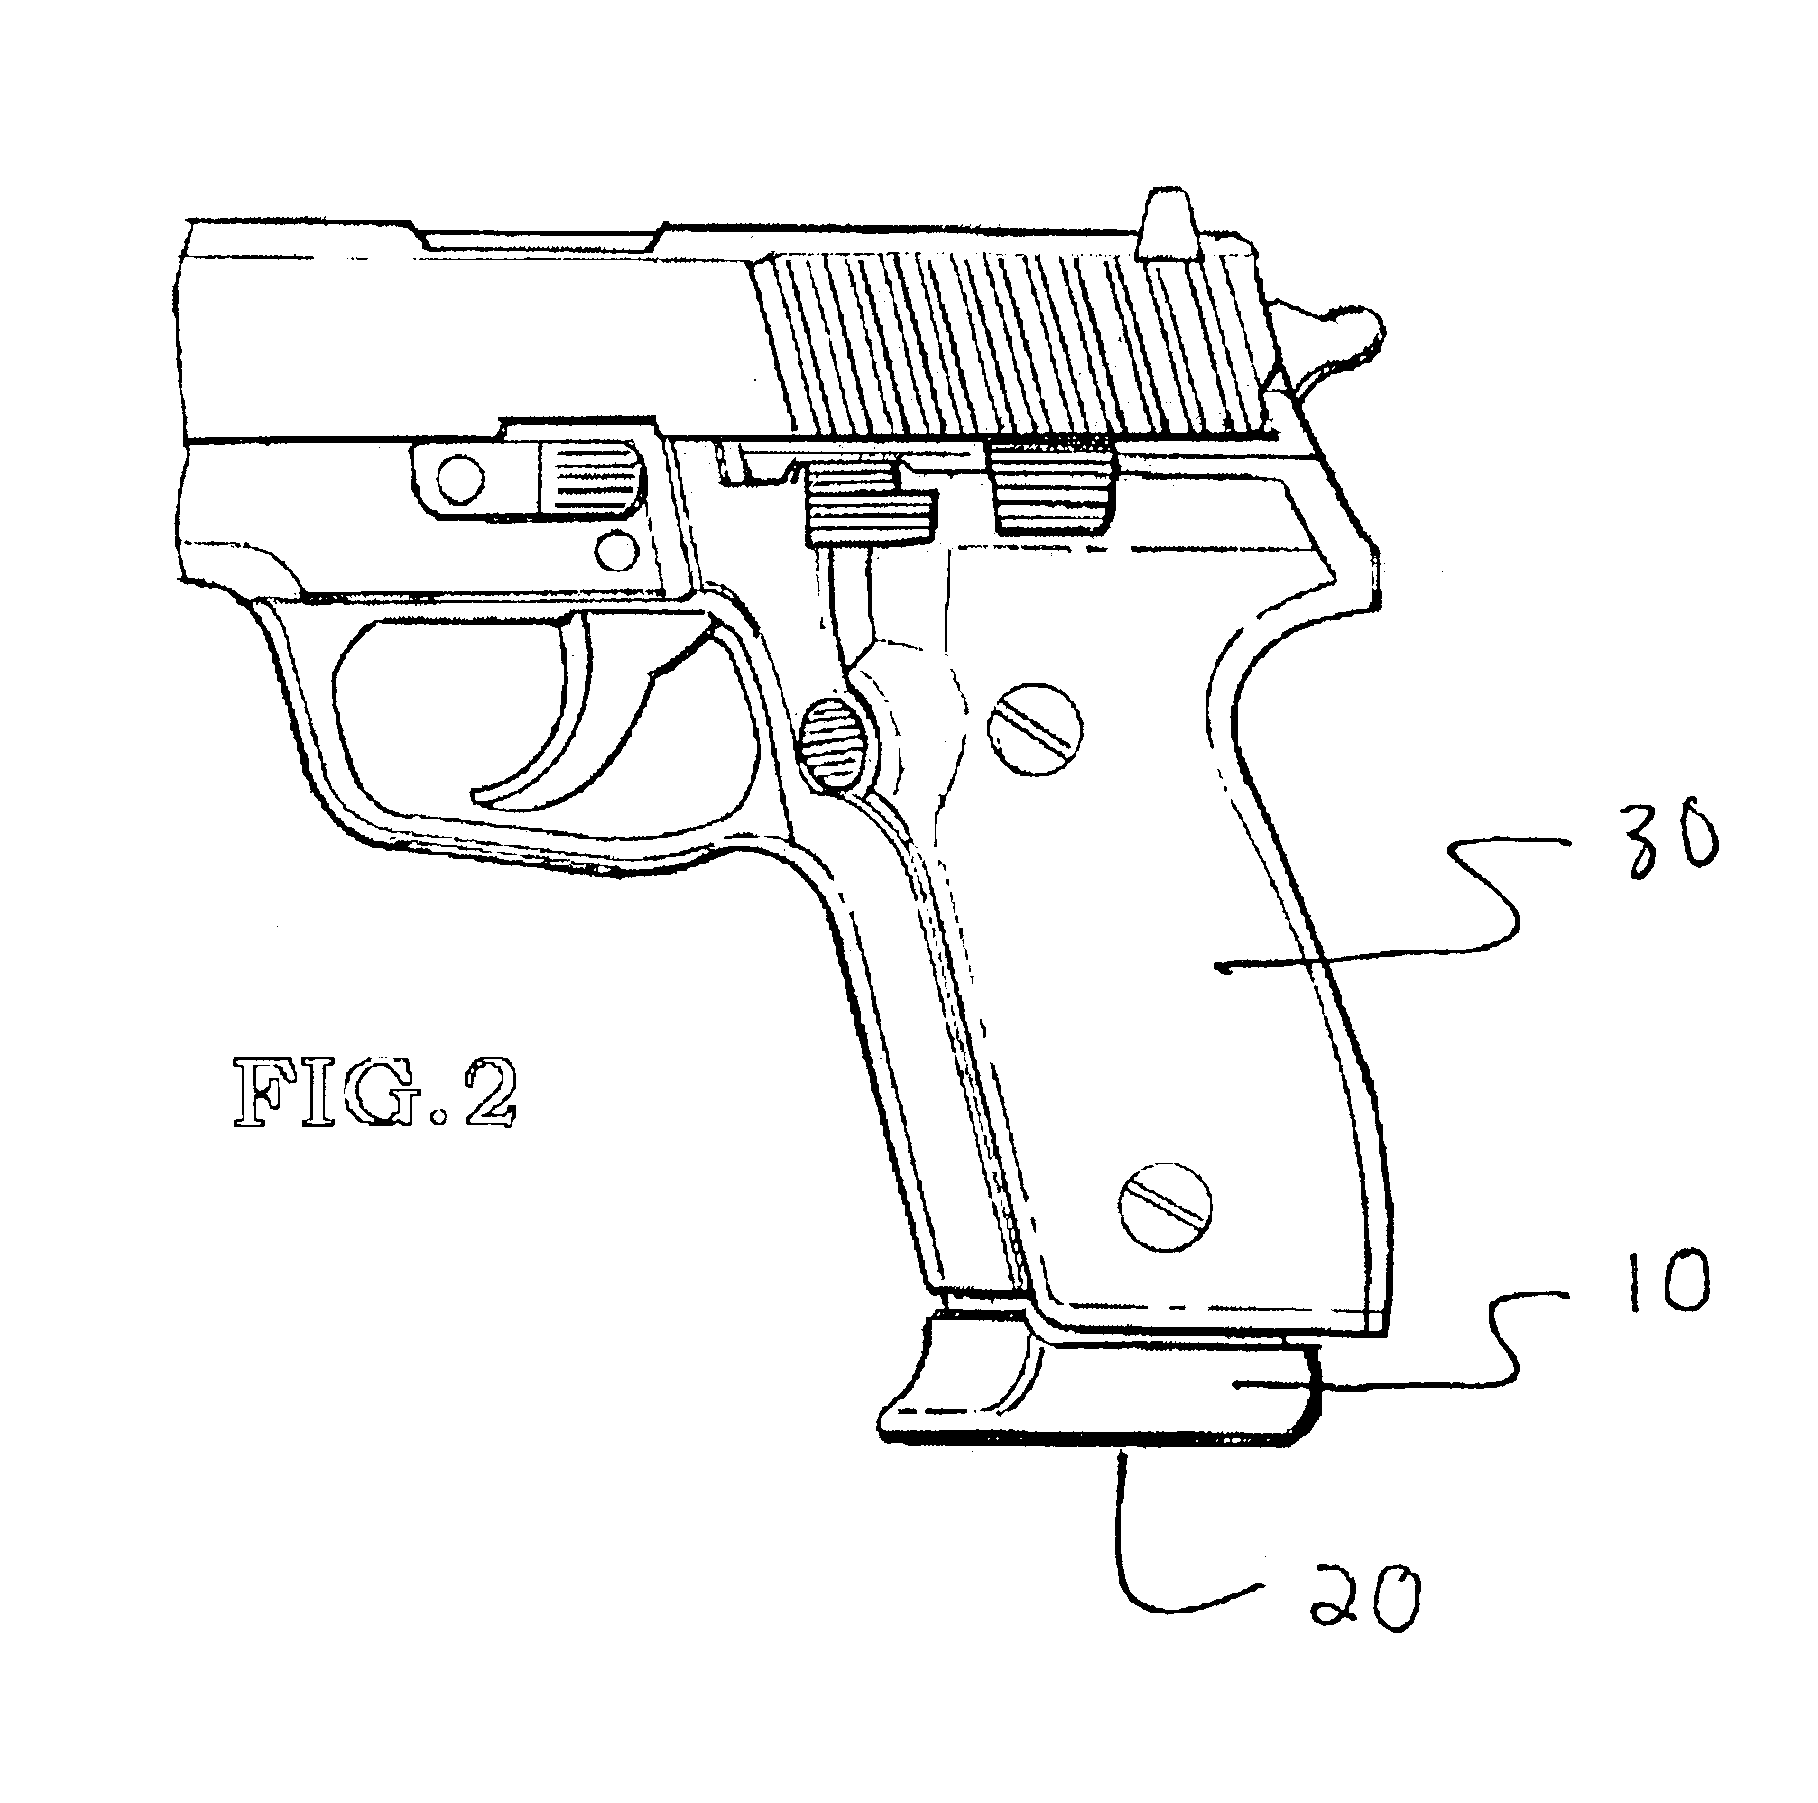 Grip extender for handgun